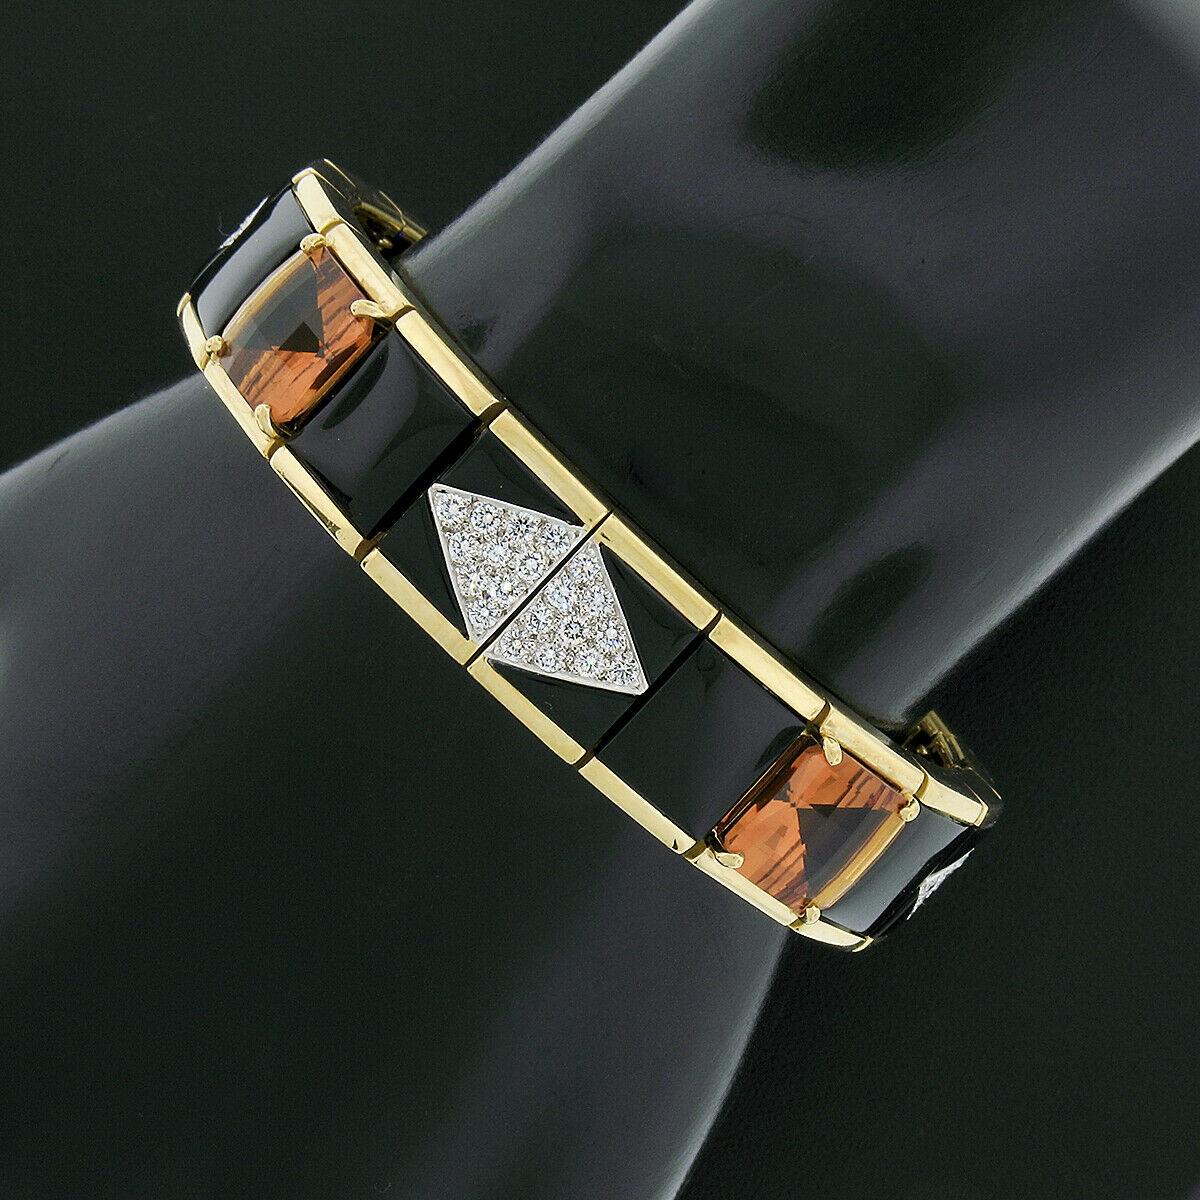 Ce magnifique bracelet a été conçu par Michael Bondanza et réalisé en or jaune 18 carats et en platine. Elle présente de larges maillons rectangulaires avec une belle finition polie dans lesquels sont soigneusement sertis de fins onyx noirs, de